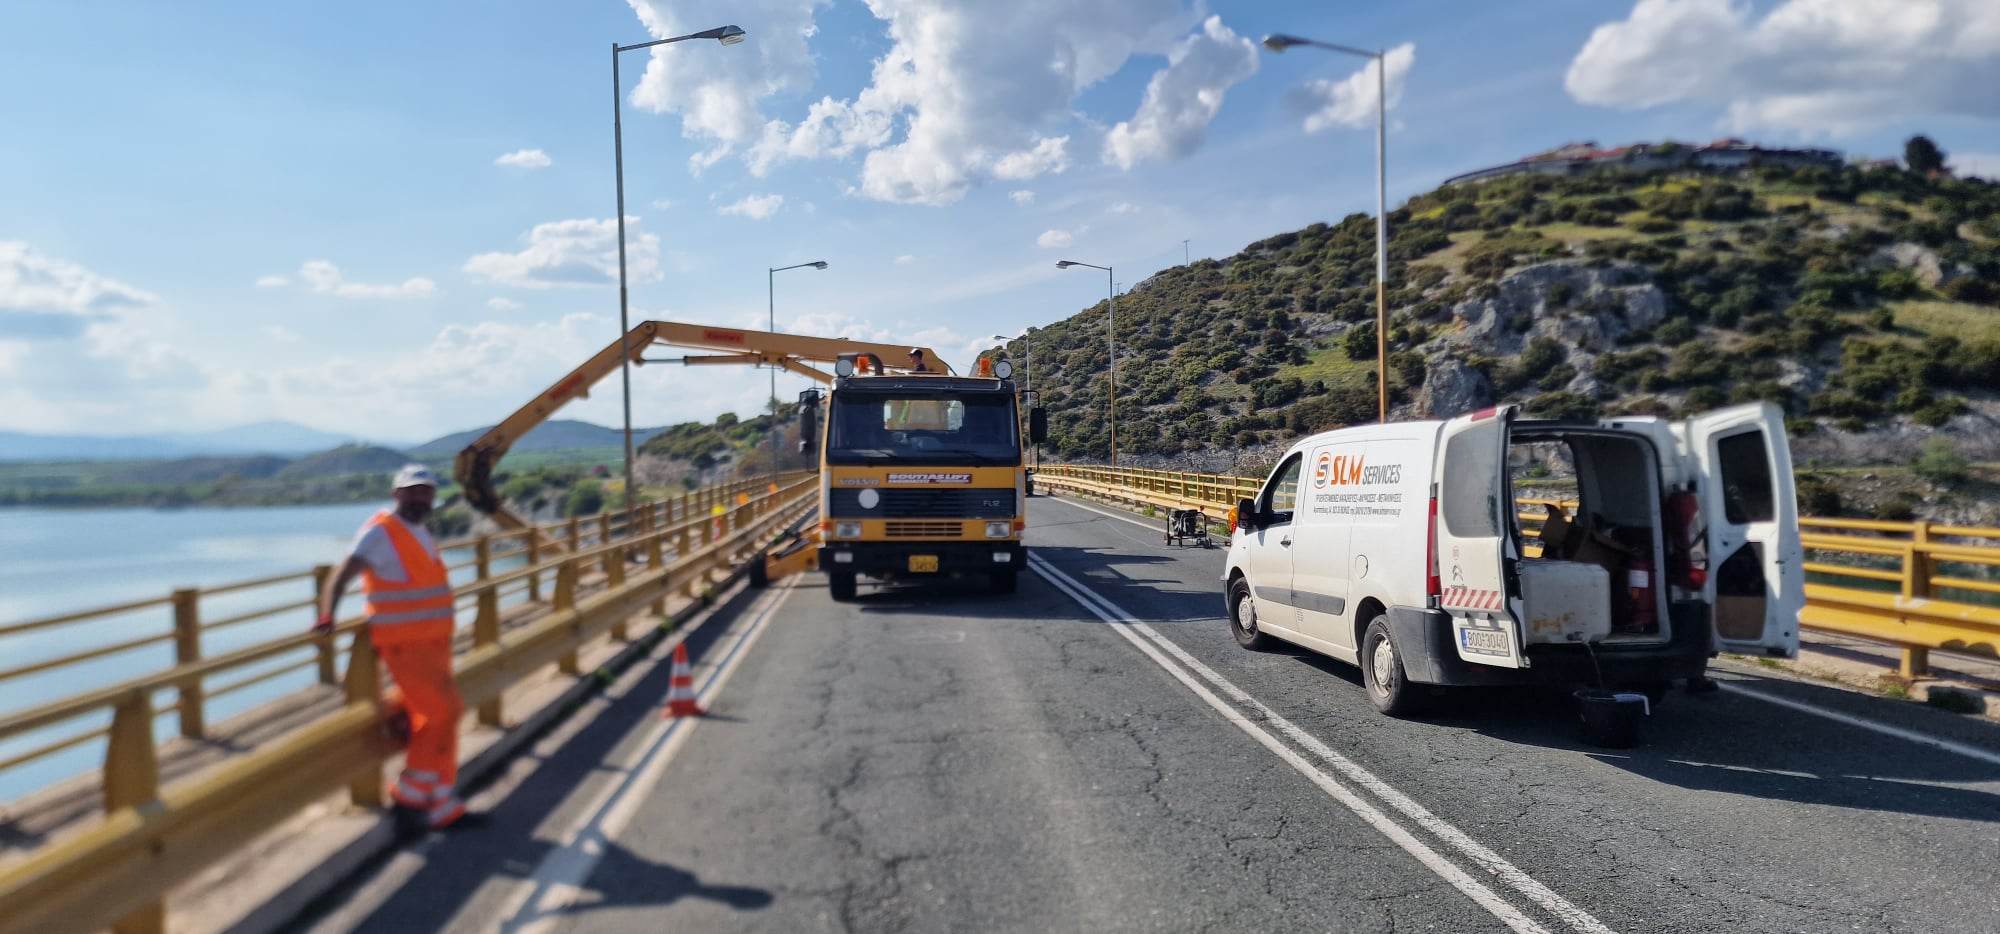 Γέφυρα Σερβίων: Ανοίγει για τα βαρέα οχήματα τις επόμενες ημέρες με περιορισμούς